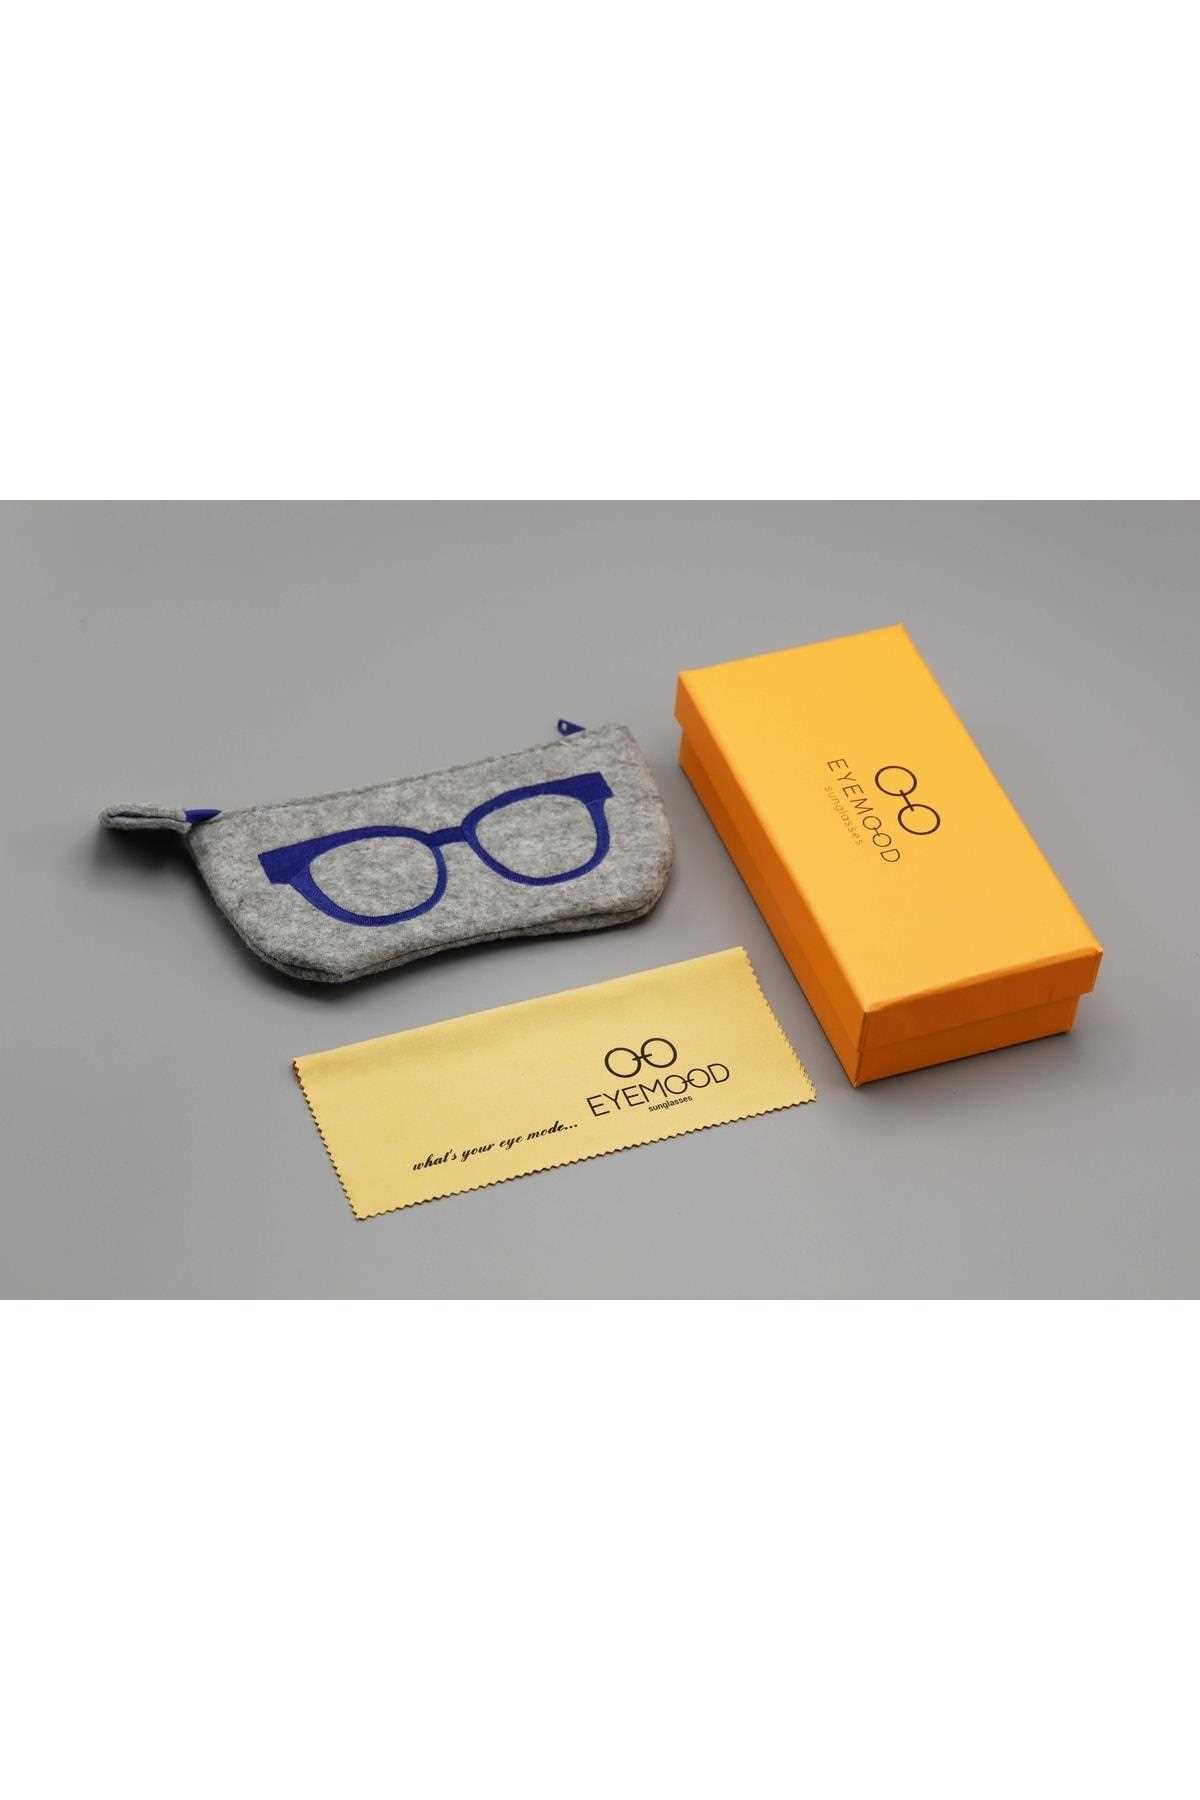 خرید انلاین عینک دودی طرح دار شیک Eyemood  کد ty378755552